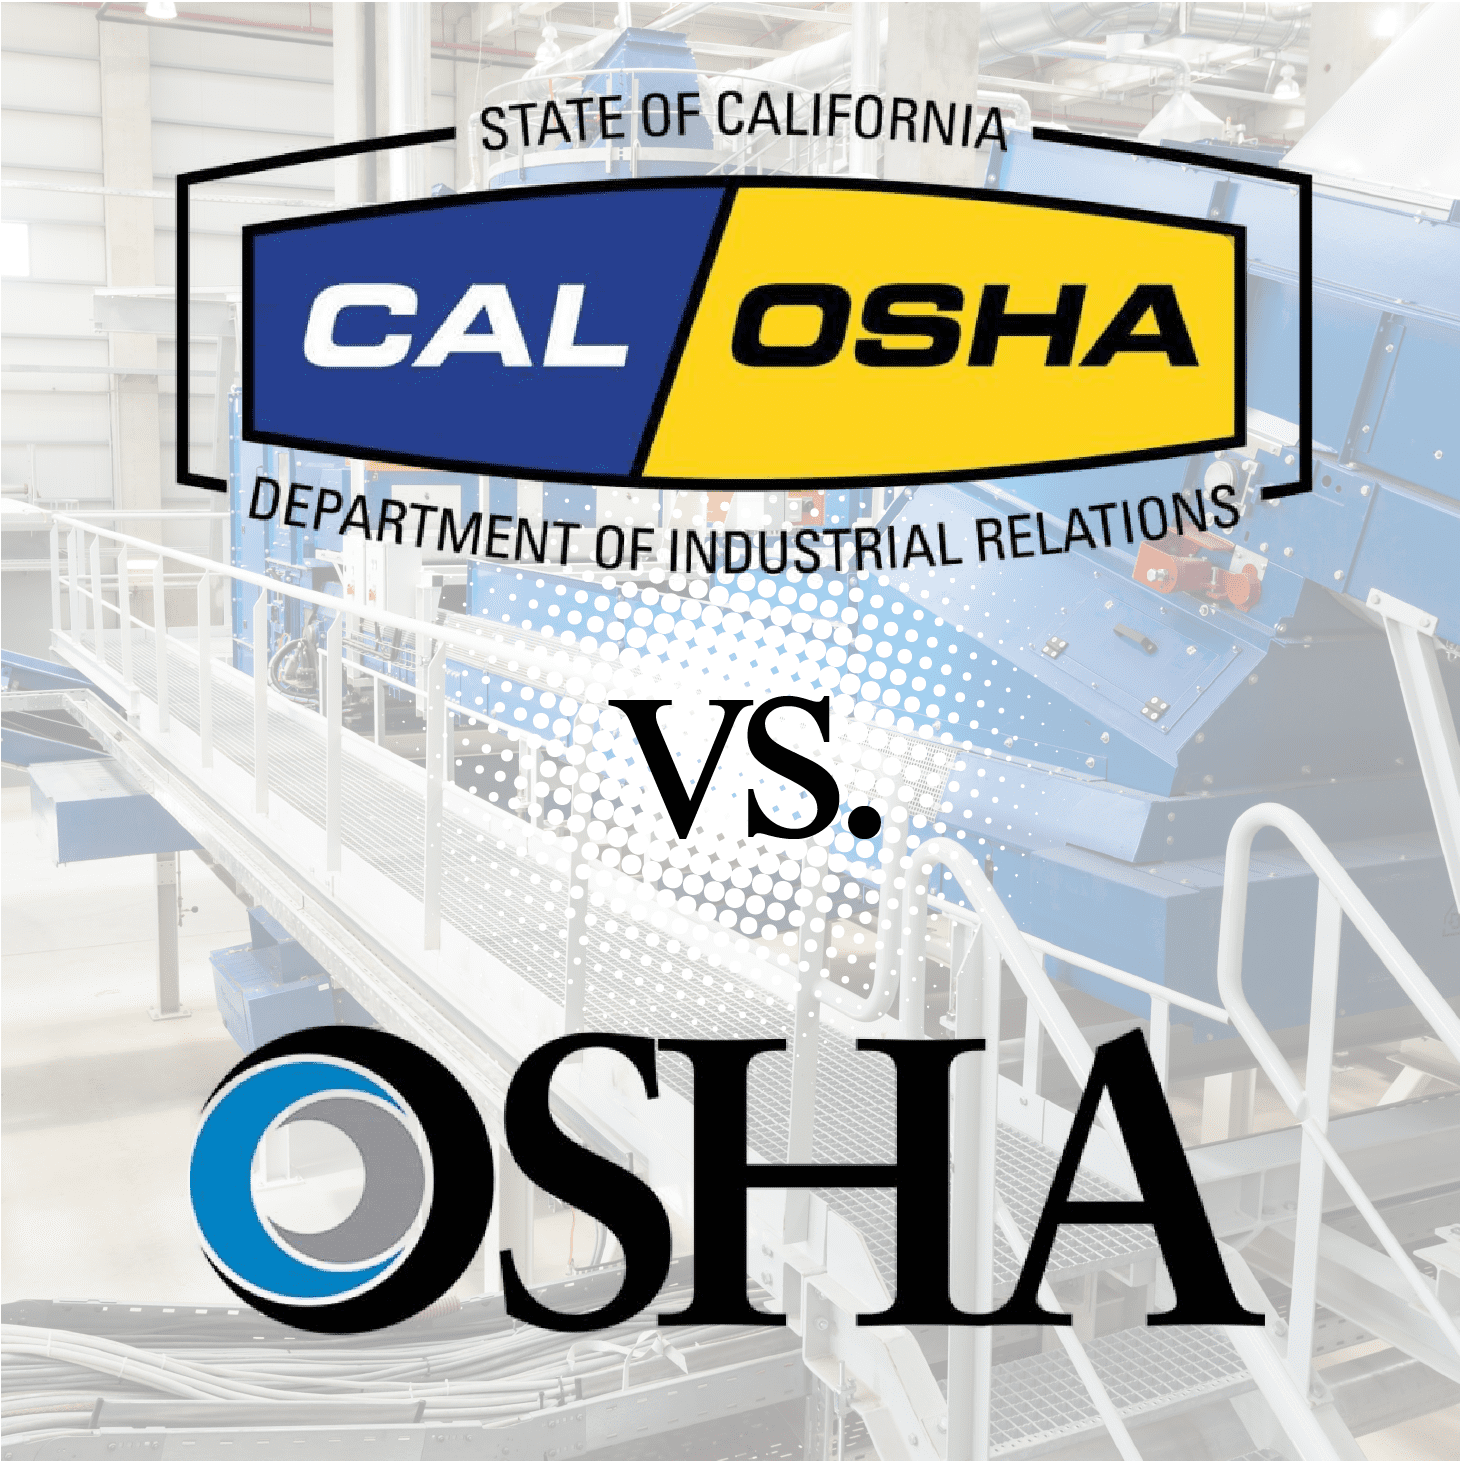 Cal/OSHA vs. Federal OSHA